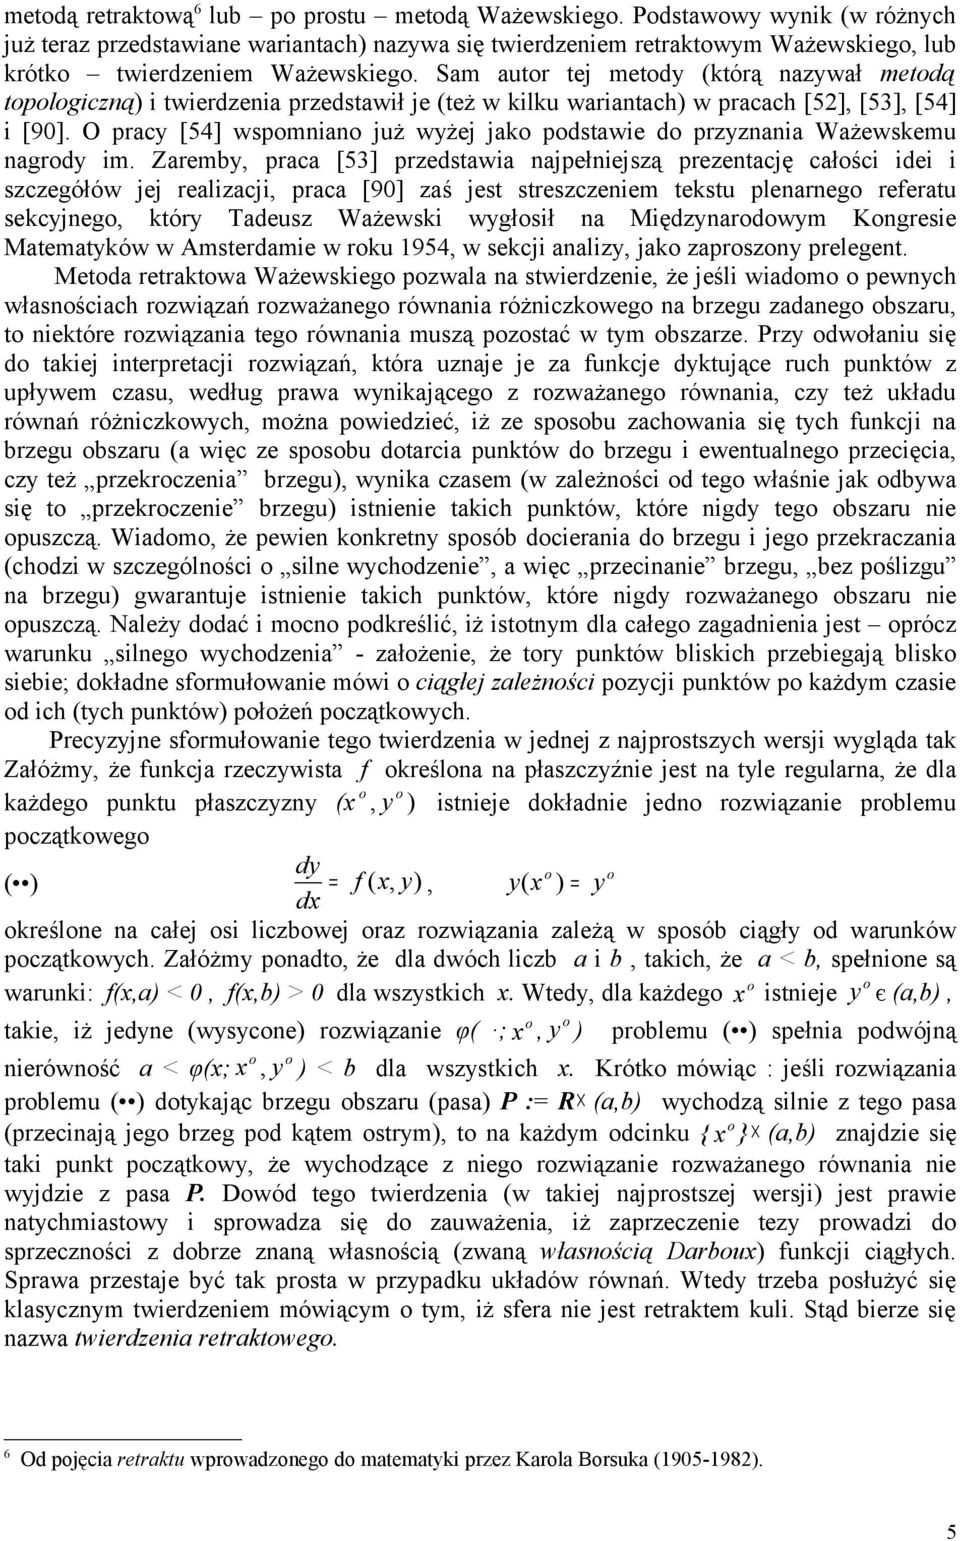 Sam autor tej metody (którą nazywał metodą topologiczną) i twierdzenia przedstawił je (też w kilku wariantach) w pracach [52], [53], [54] i [90].